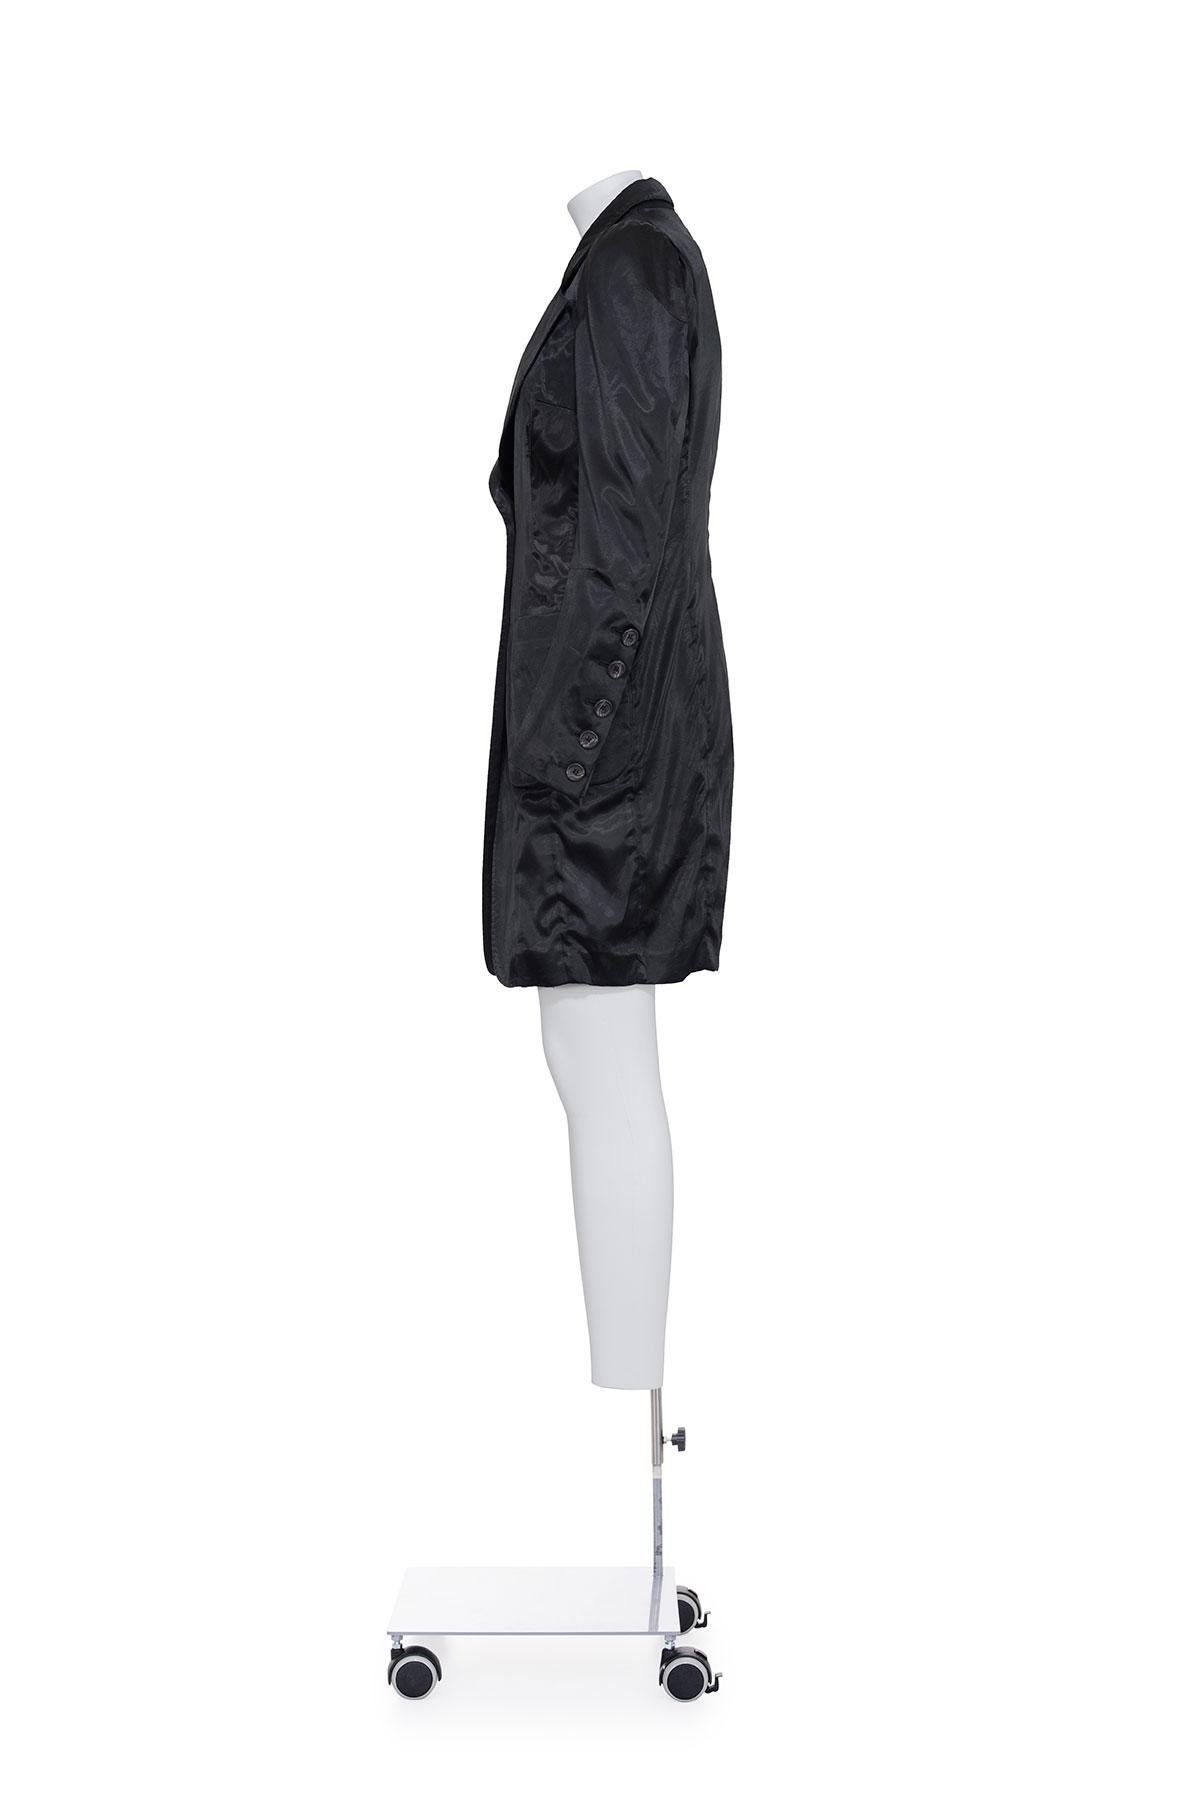 Seltene und ikonische lange Jacke mit anatomischen Zacken von Maison Martin Margiela, Frühjahr/Sommer 1991.
Schlitz an den hinteren Ärmeln.
Zwei Taschen auf der Vorderseite.
Das Etikett mit der Zusammensetzung fehlt, es scheint aus Polyester zu sein.